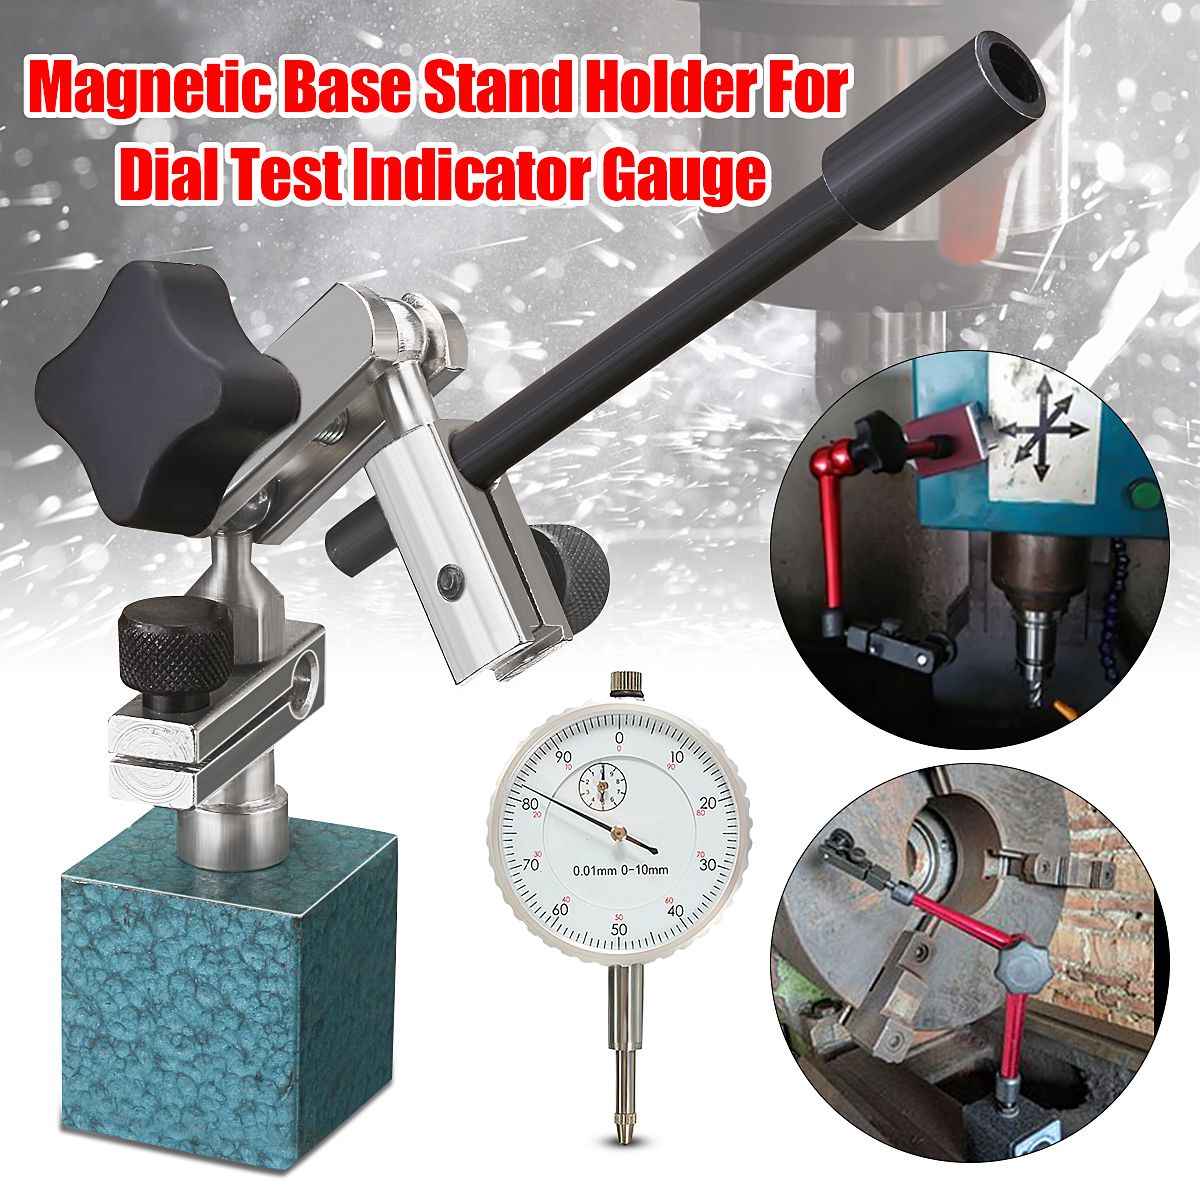 Adjustable-Magnetic-Base-Stand-Holder-For-Dial-Test-Indicator-Gauge-1261230